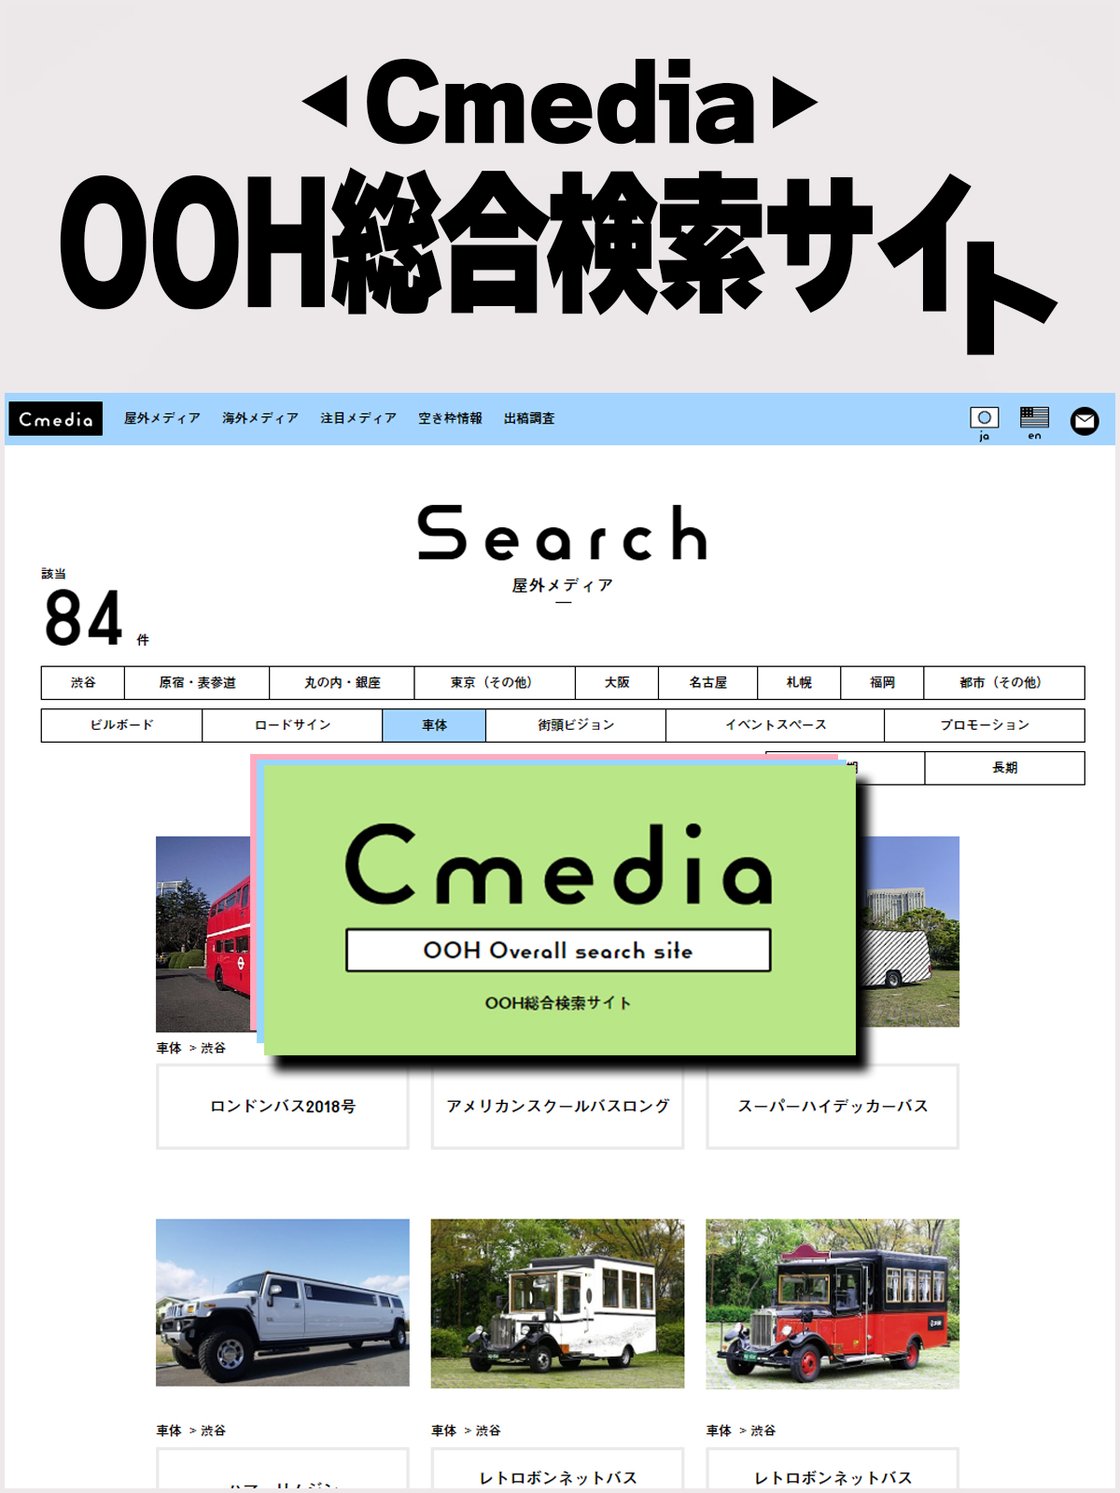 車両広告料金が一目でわかる
OOH総合検索サイト「Cmedia」